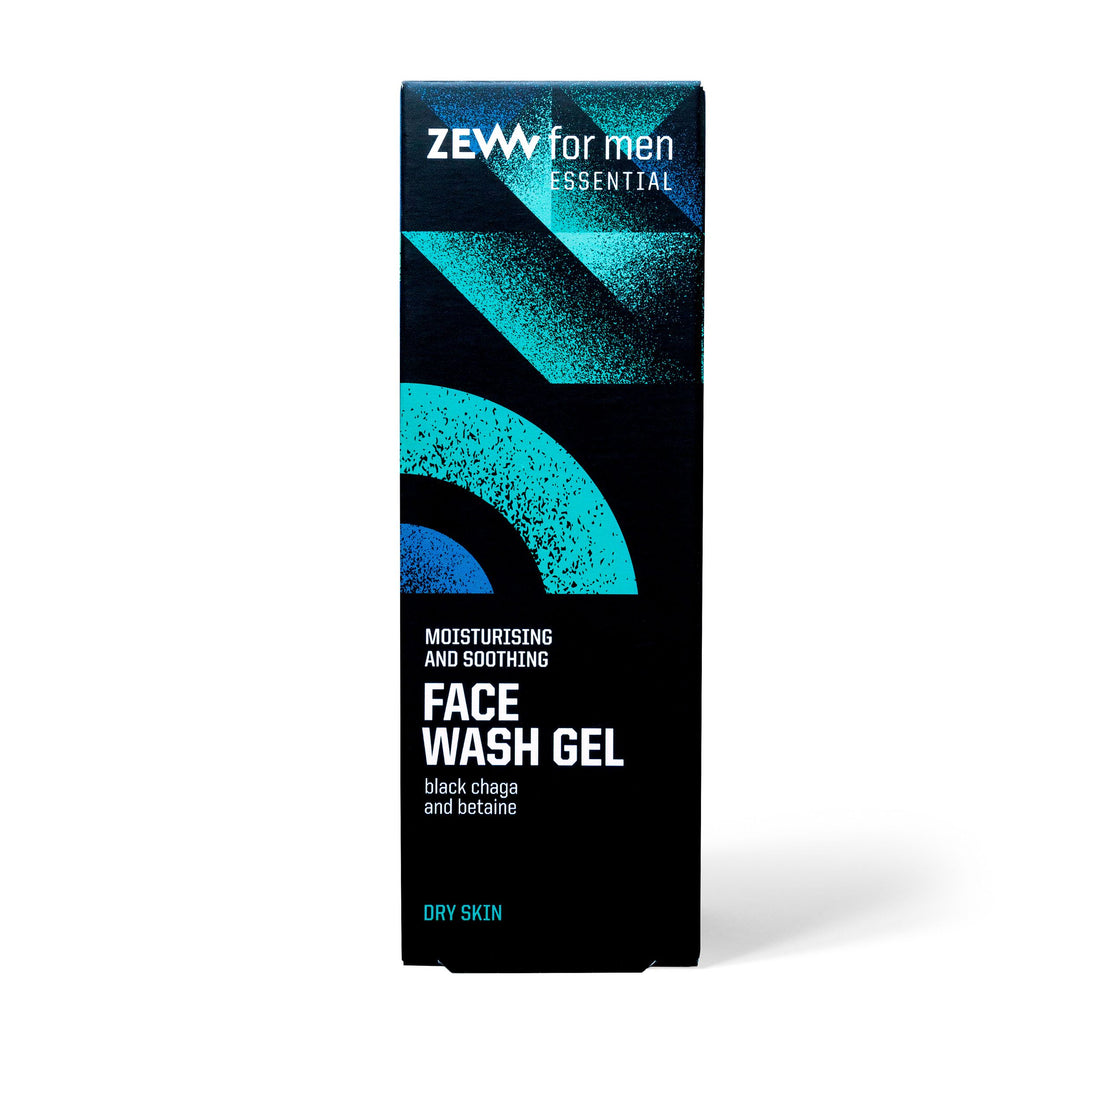 Face Wash Gel - dry skin 100ml